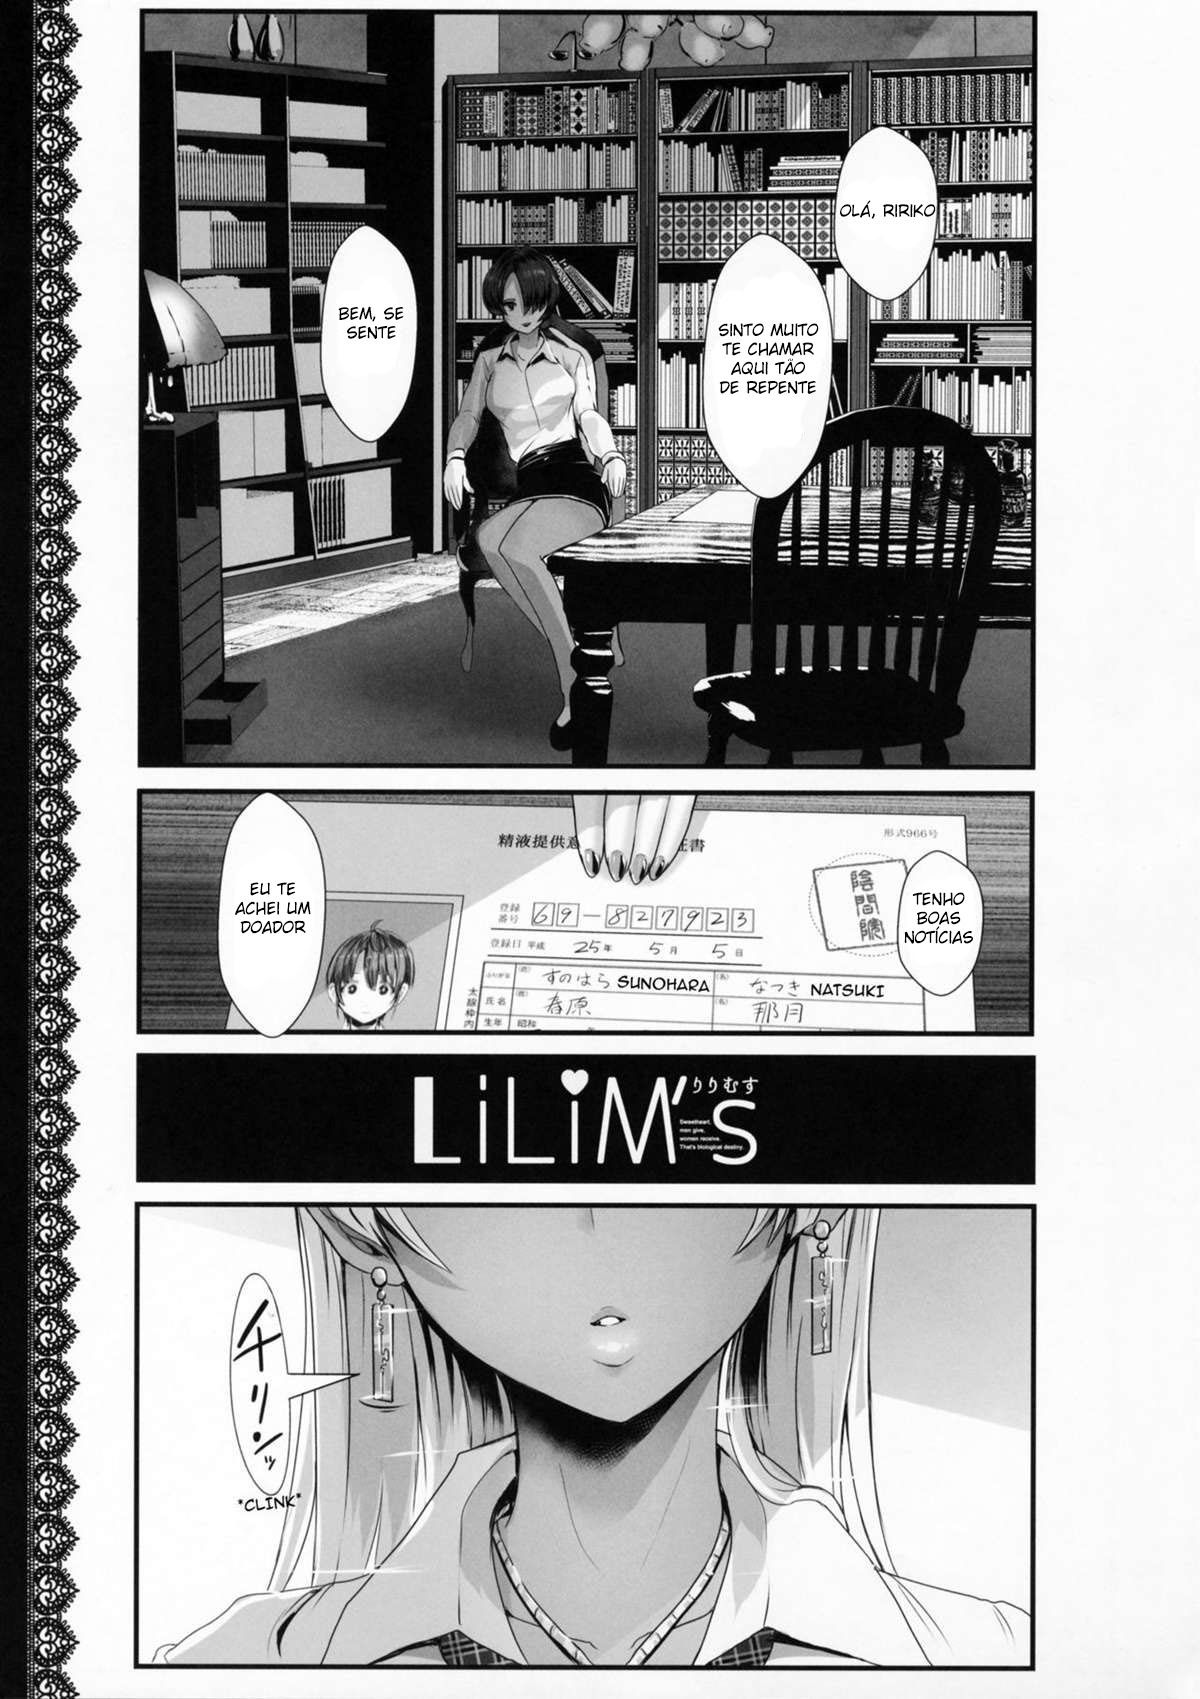 LiLiM’s